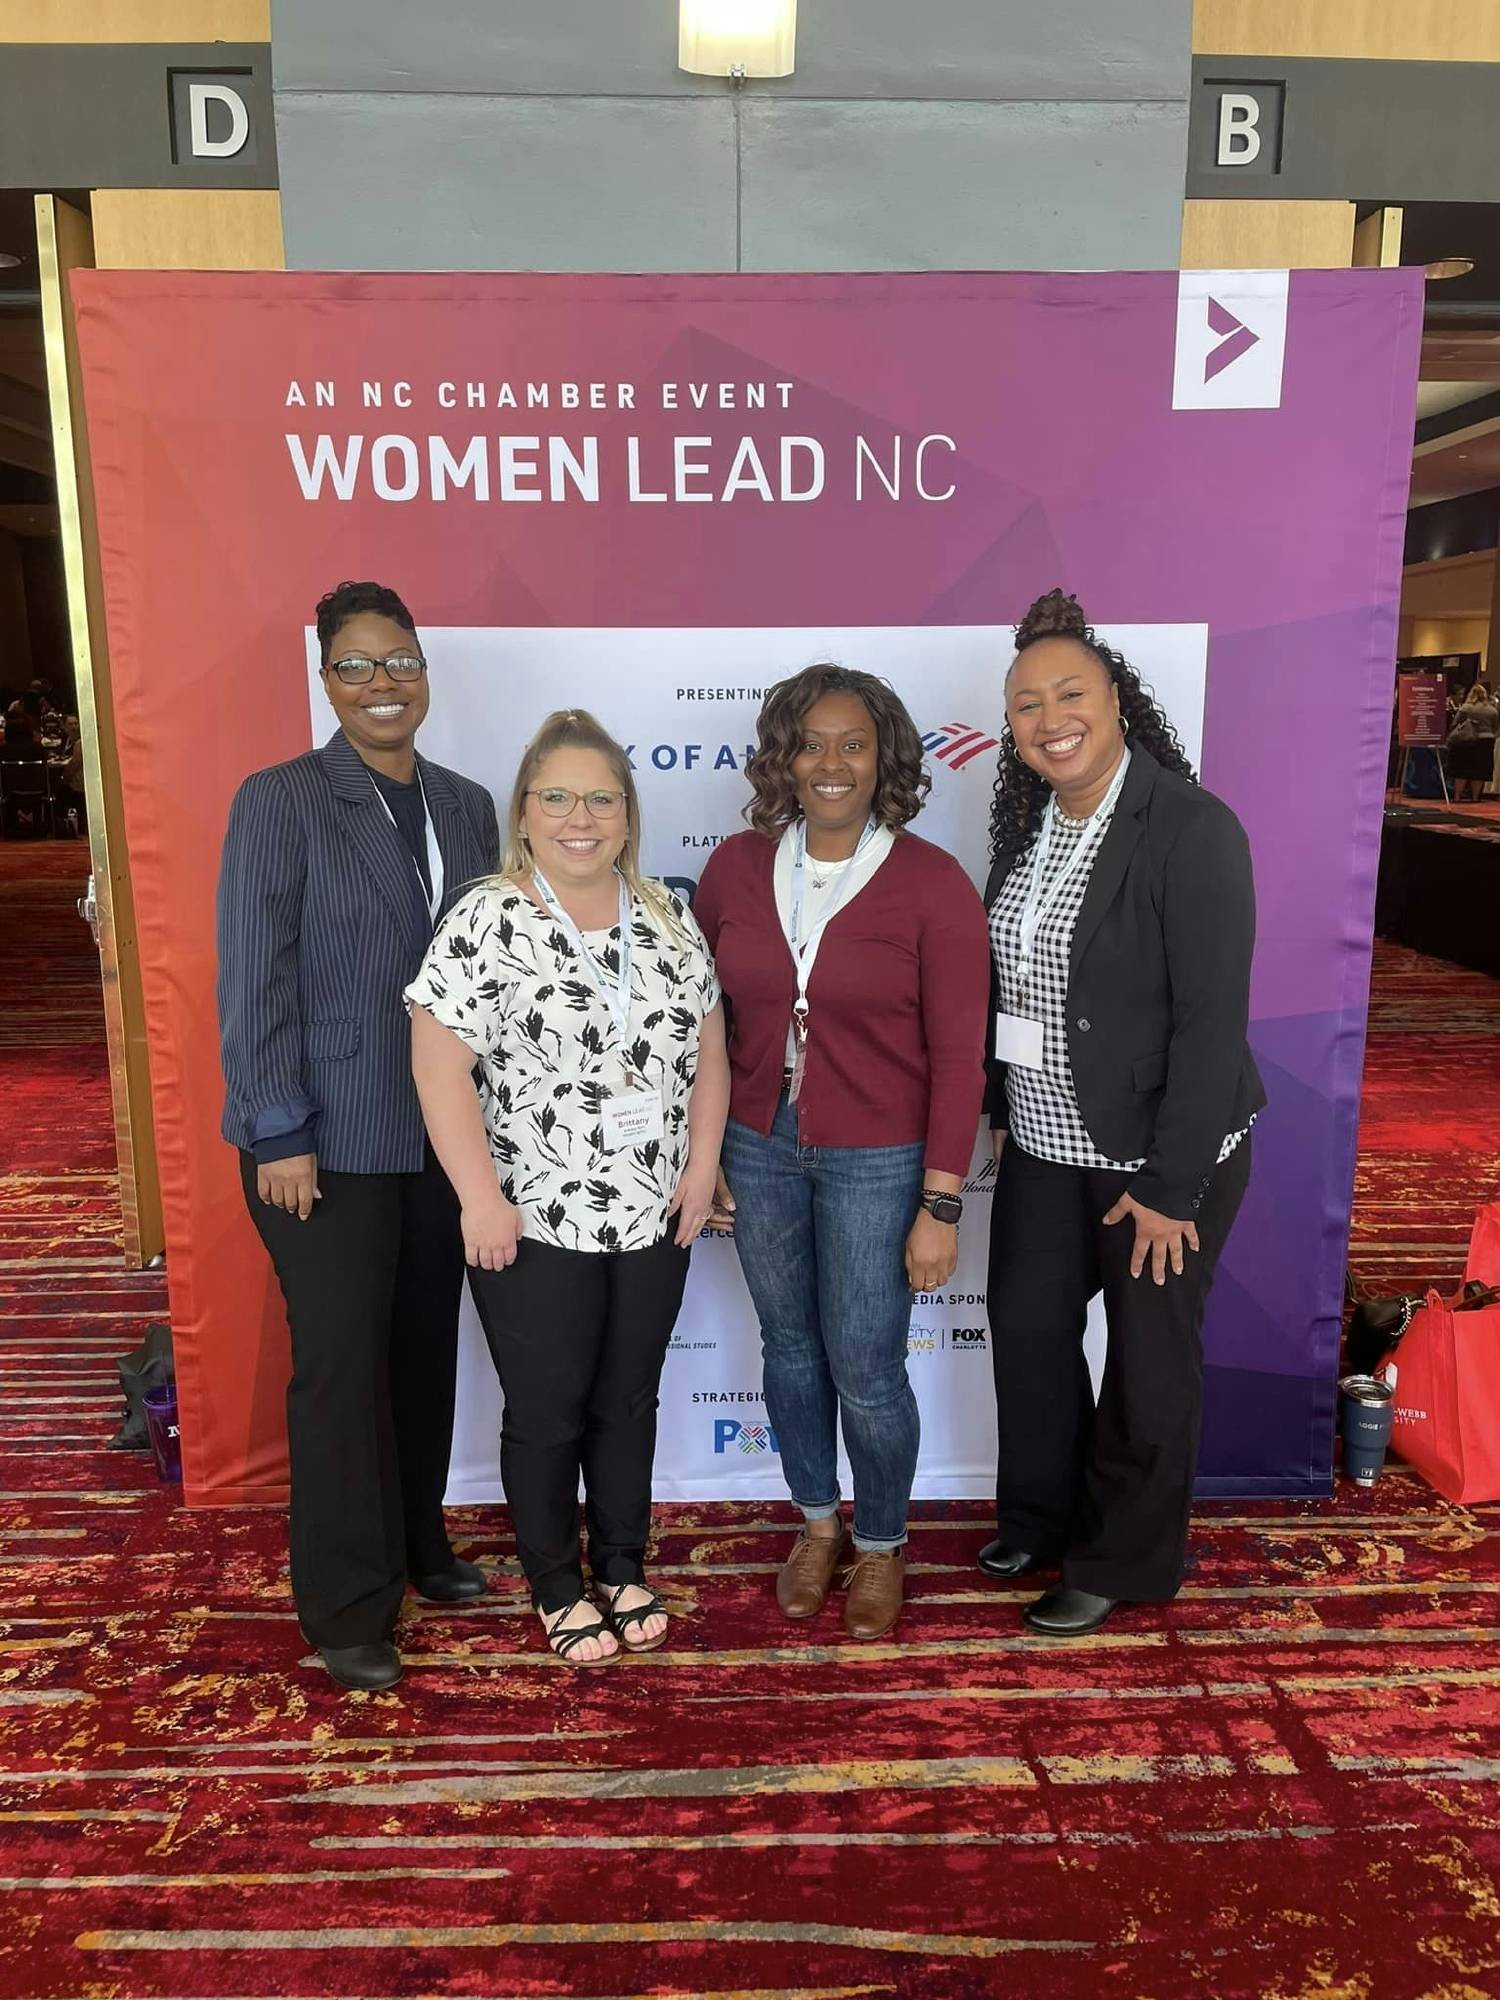 Attending a women's leadership program in North Carolina